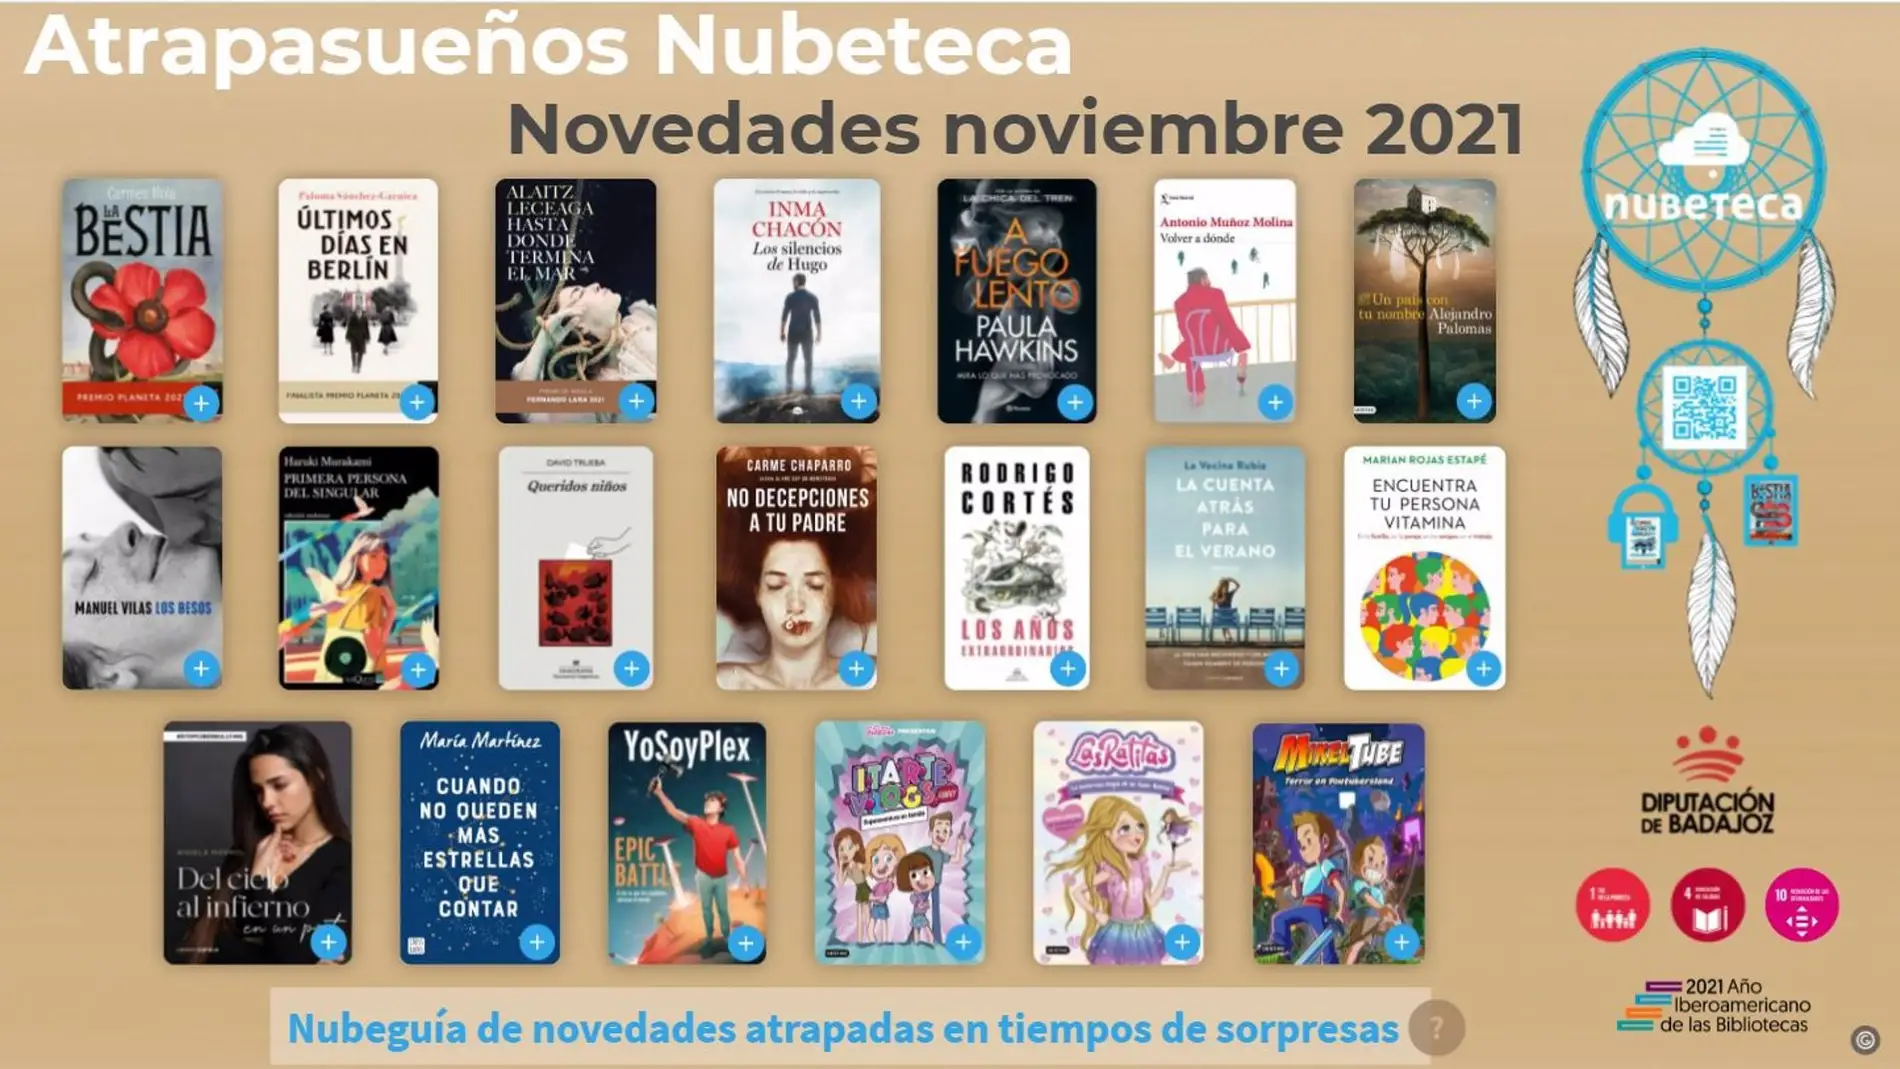 El catálogo Nubeteca de la Diputación de Badajoz añade a su oferta los Premios Planeta 2021